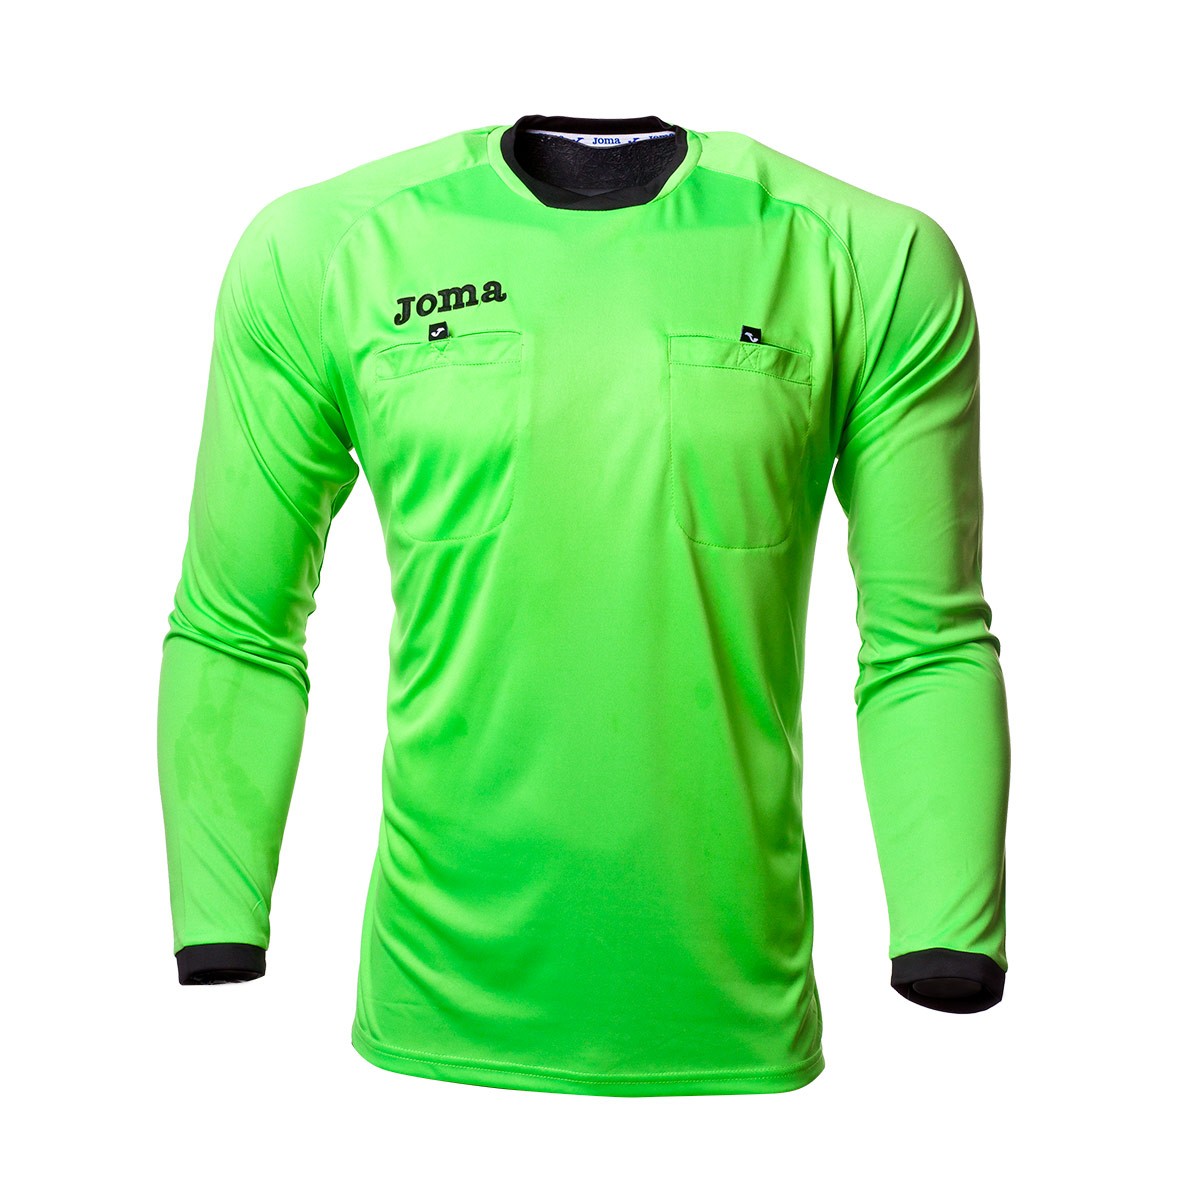 Camiseta Joma Arbitro m/l Verde fluor - Tienda de fútbol Fútbol Emotion